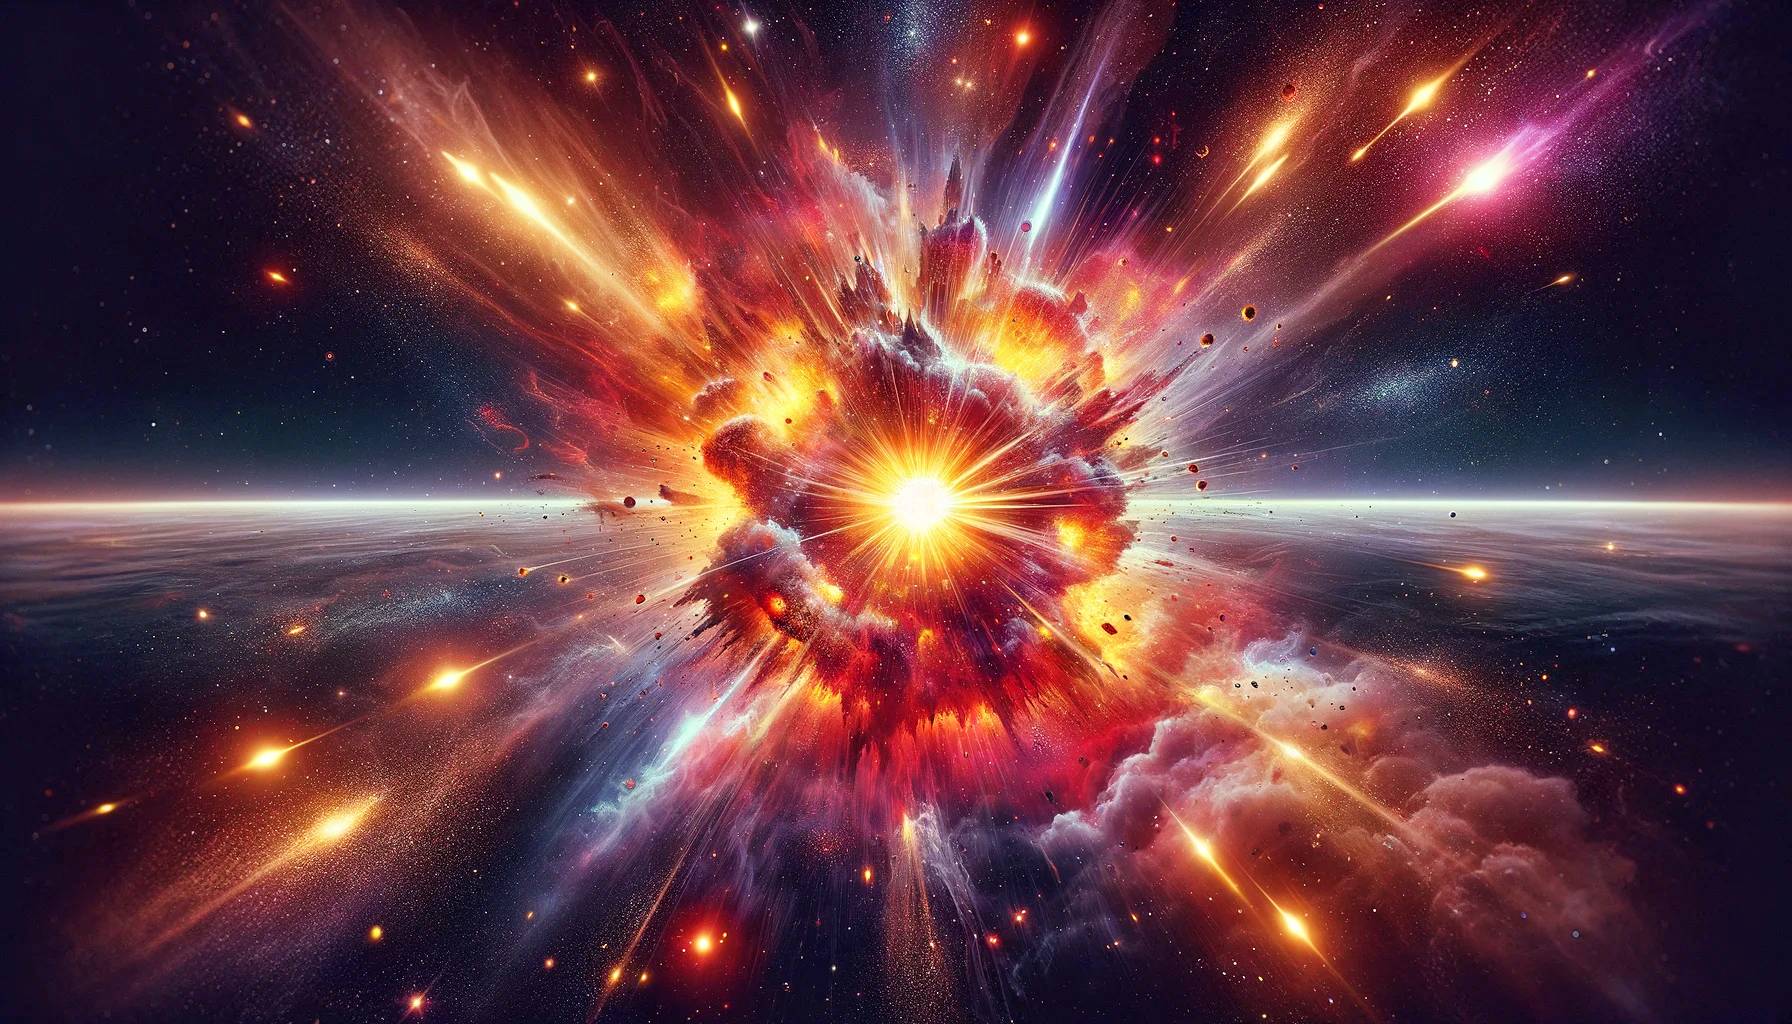 La explosión de una estrella que desafía las leyes de la física ha dejado a los investigadores sin explicaciones